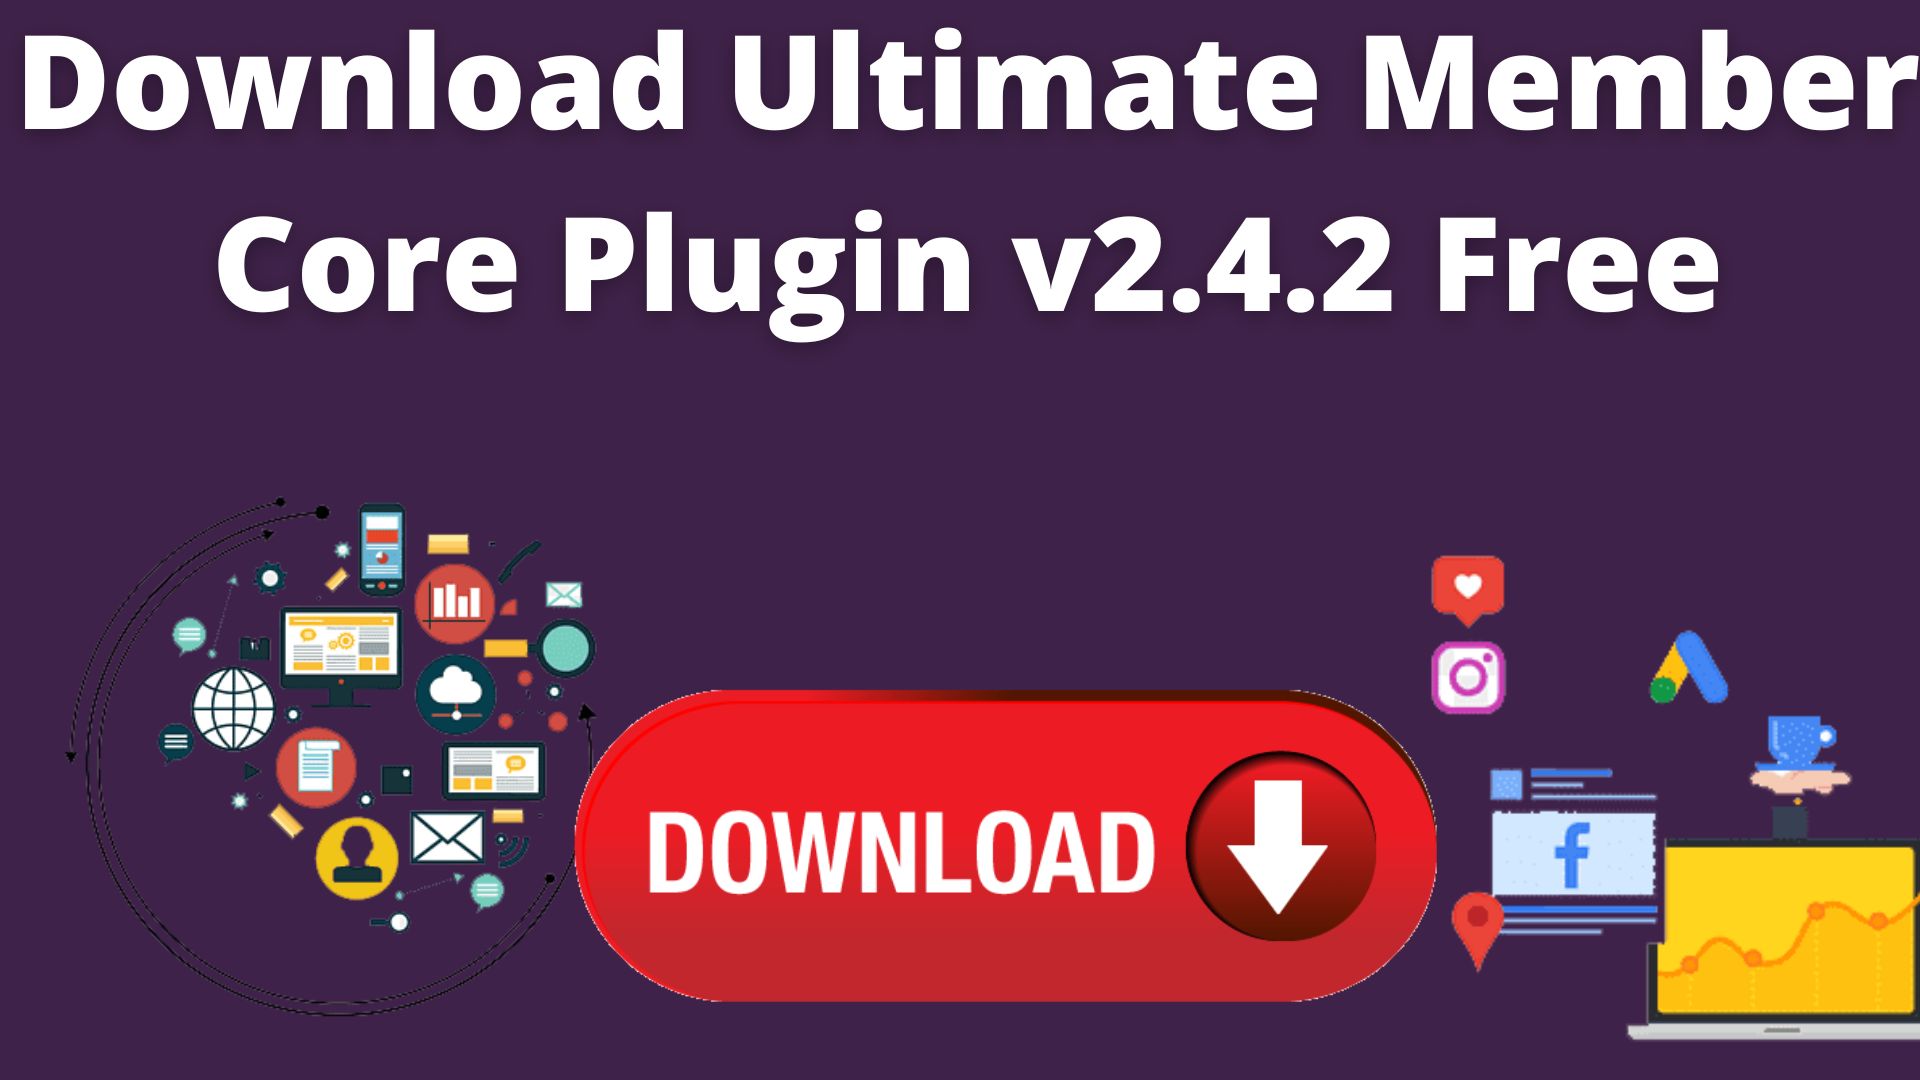 Download ultimate member core plugin v2. 4. 2 free